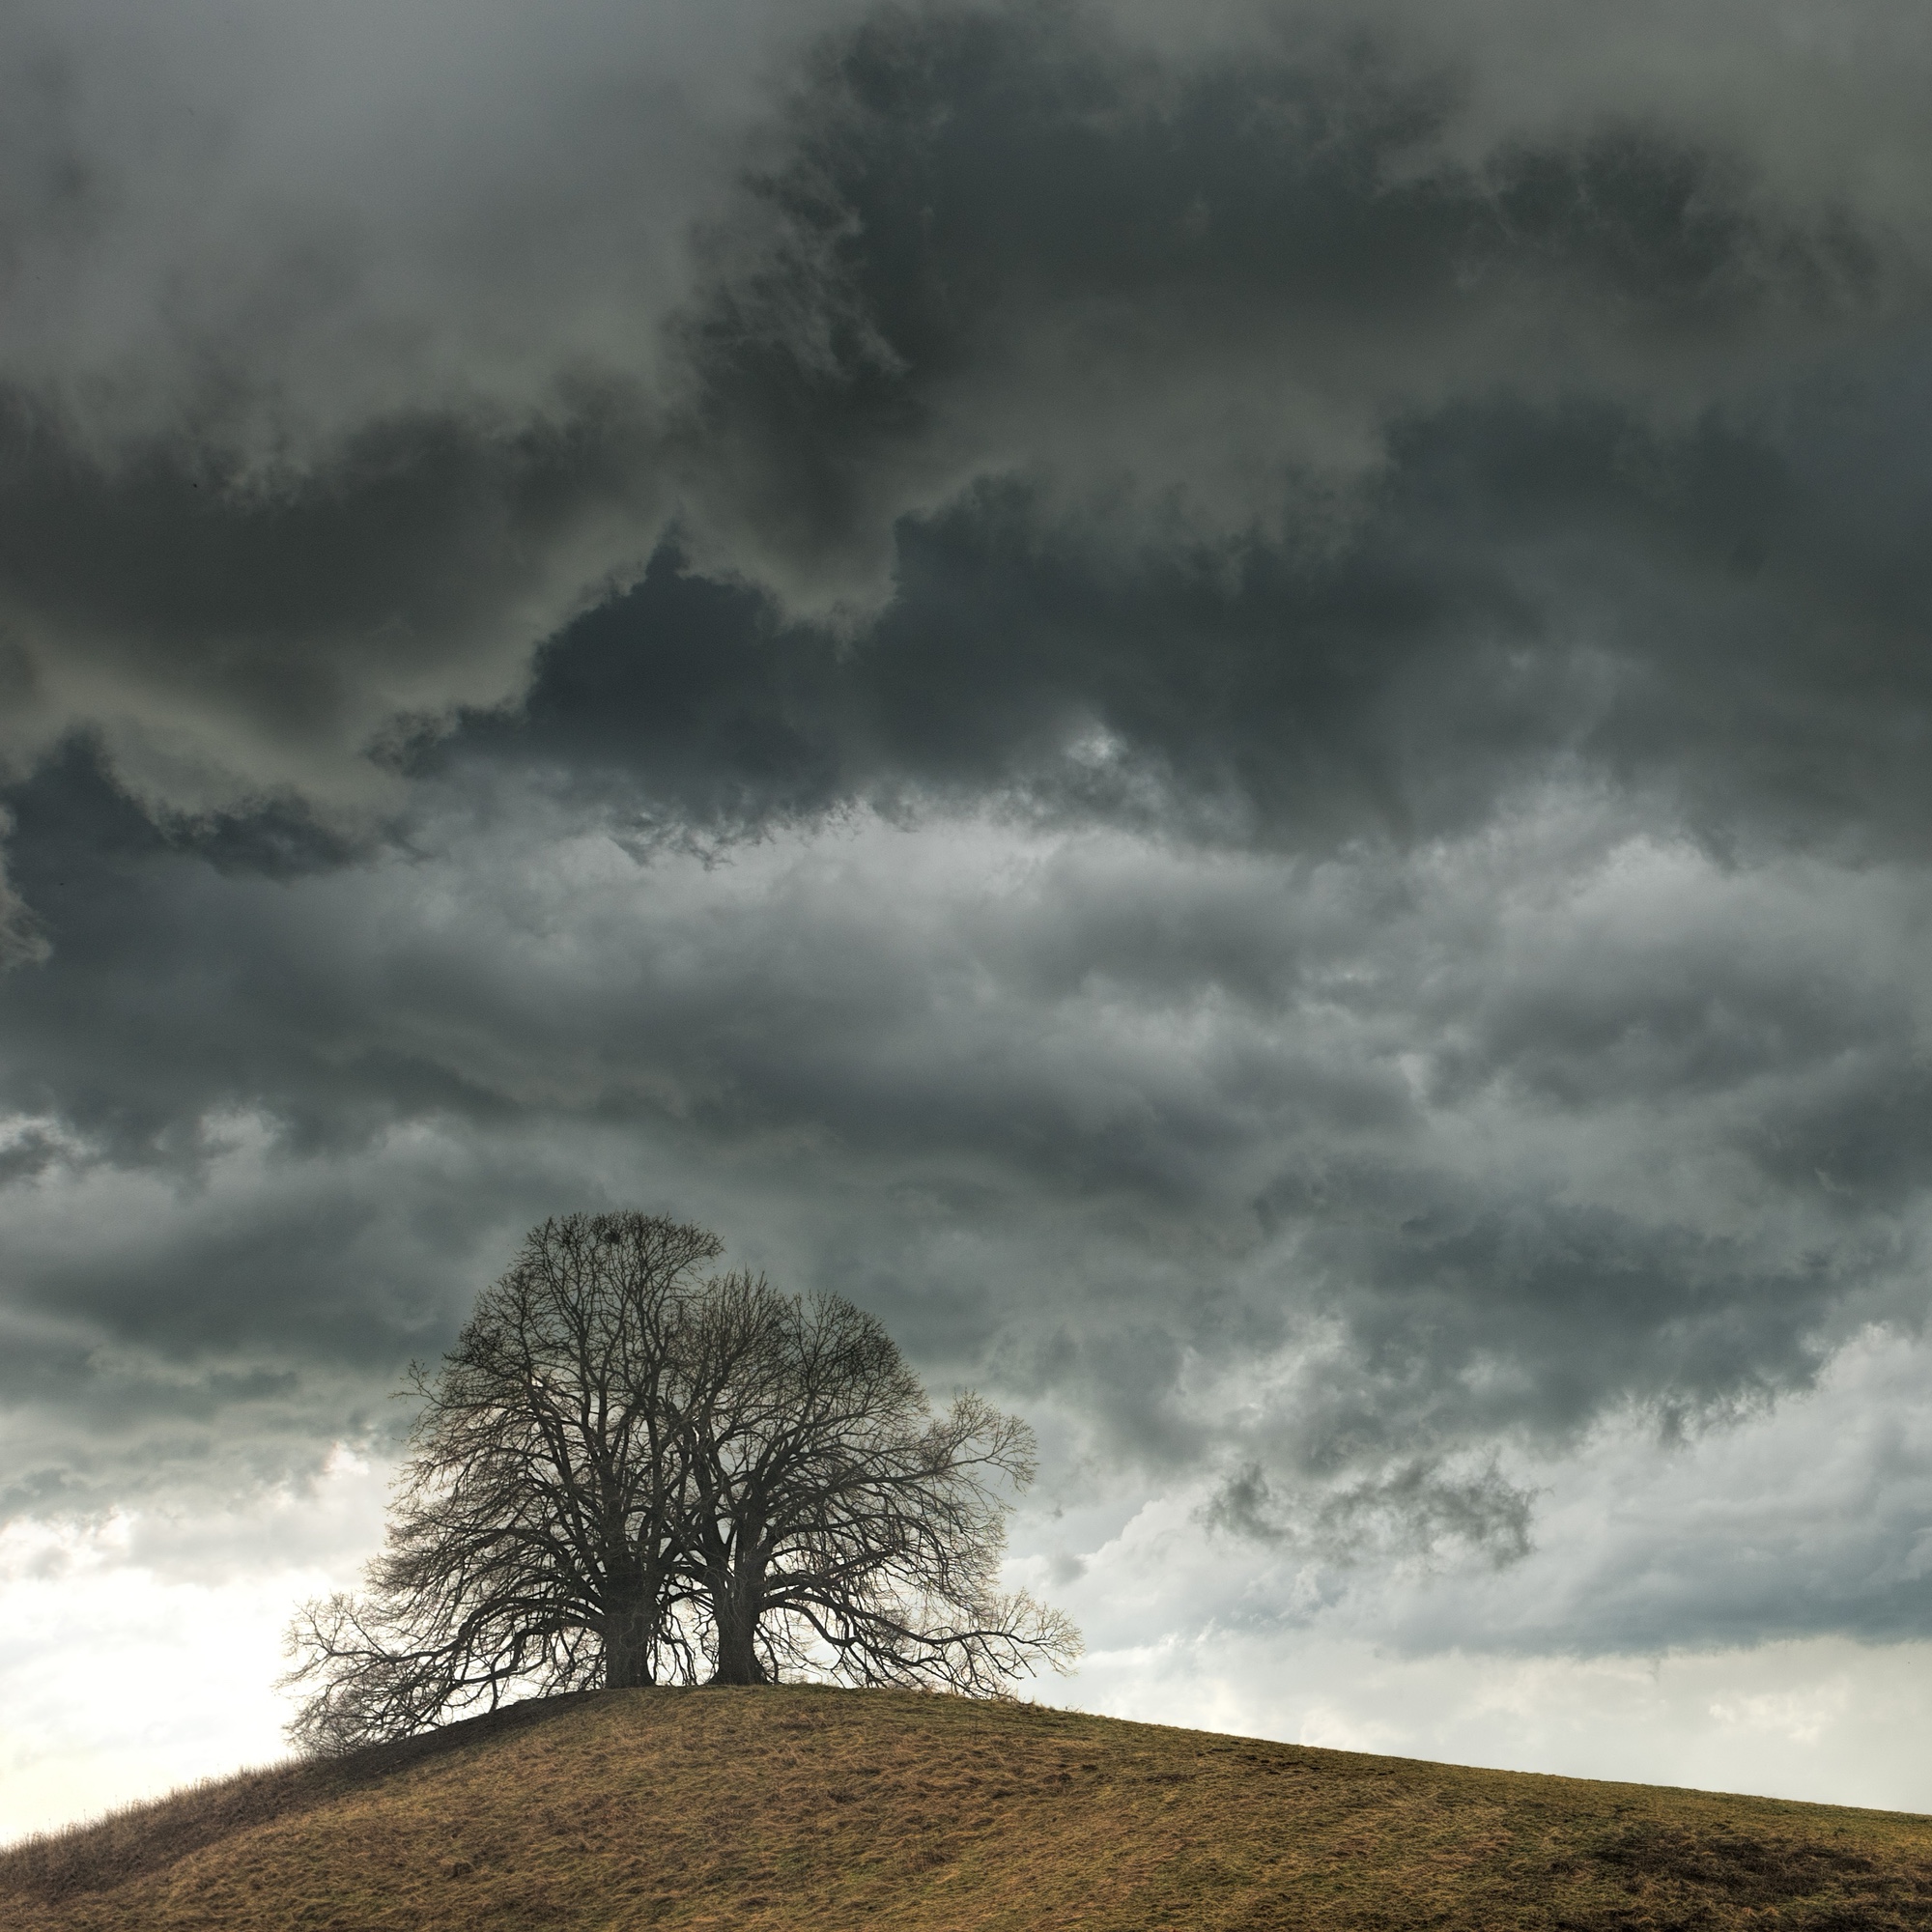 Foto: Baum auf einem Hügel mit Gewitterwolken im Hintergrund